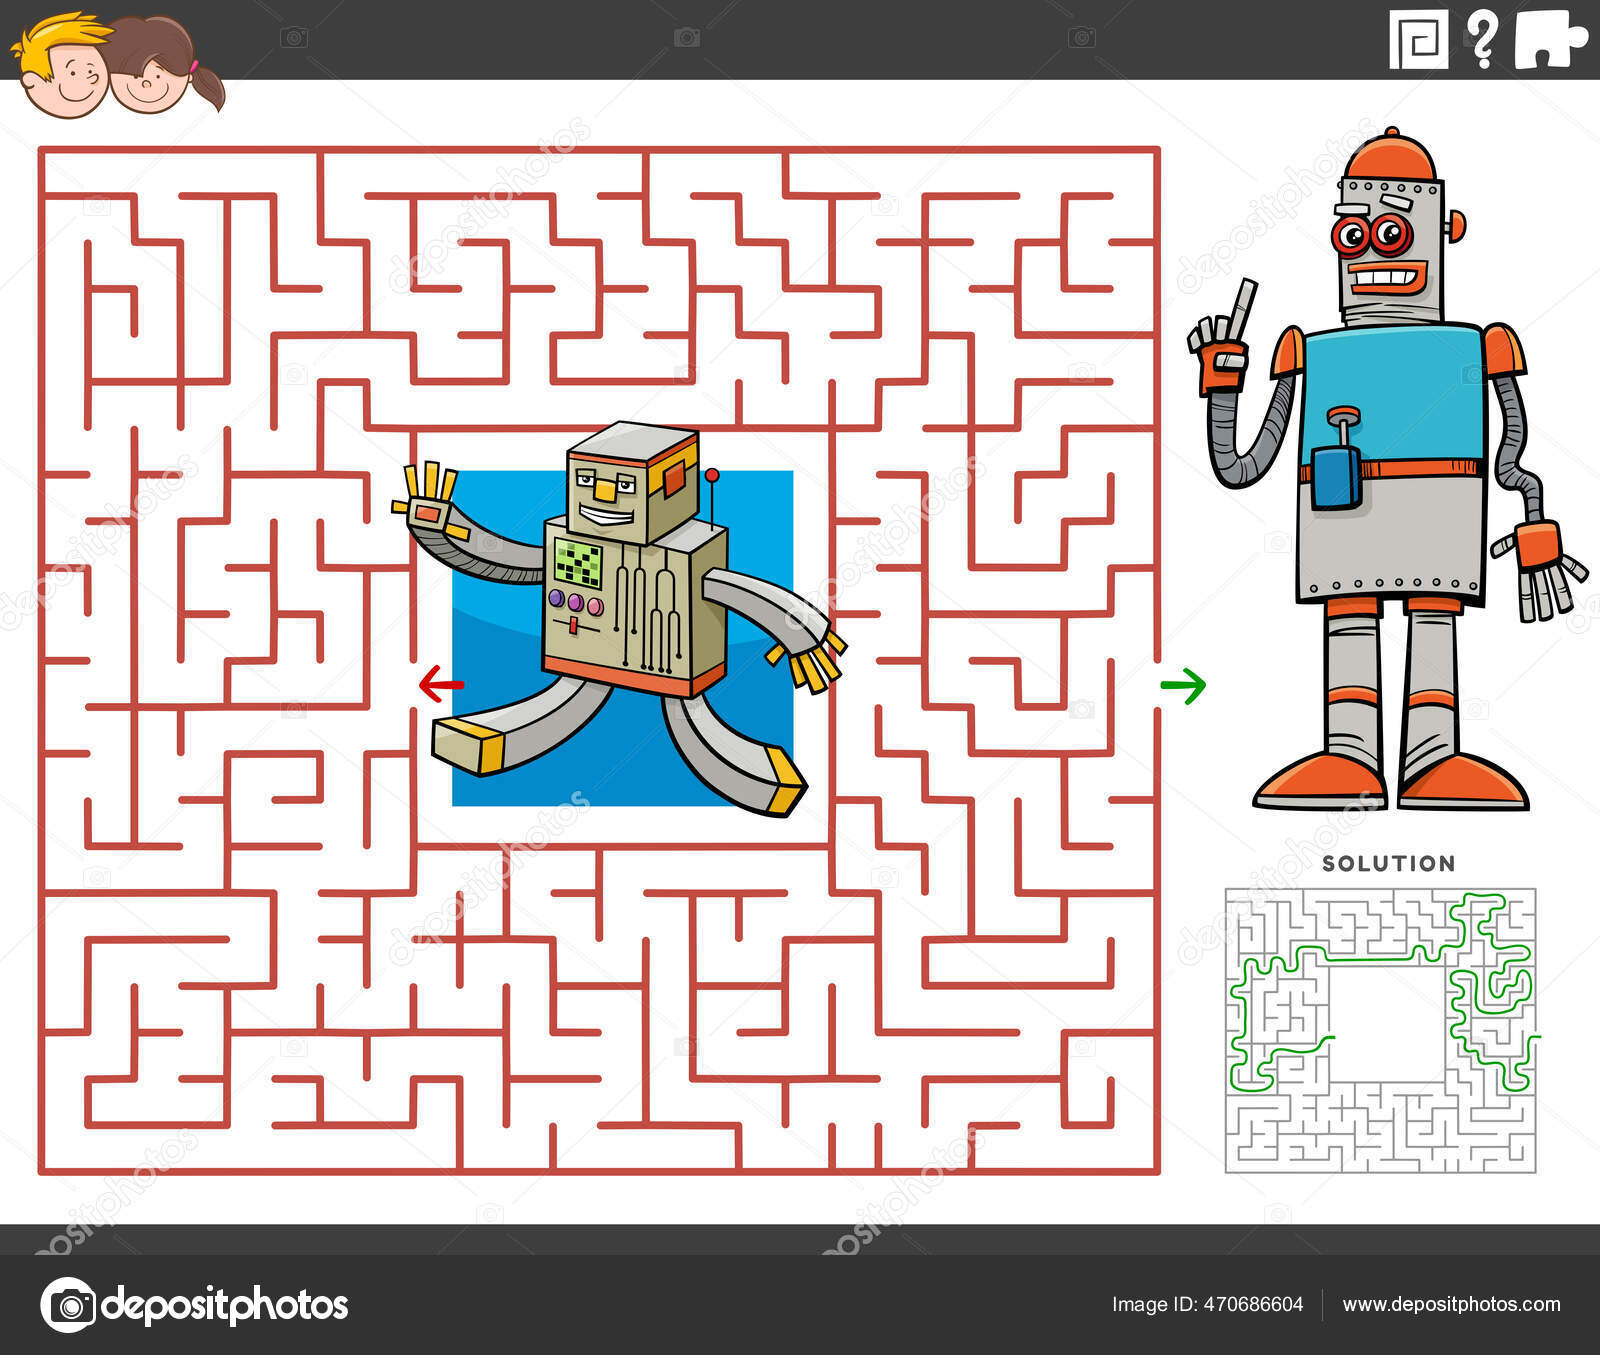 Desenhos Animados Ilustração Jogos Quebra Cabeça Labirinto Educacional  Definido Com imagem vetorial de izakowski© 663681870